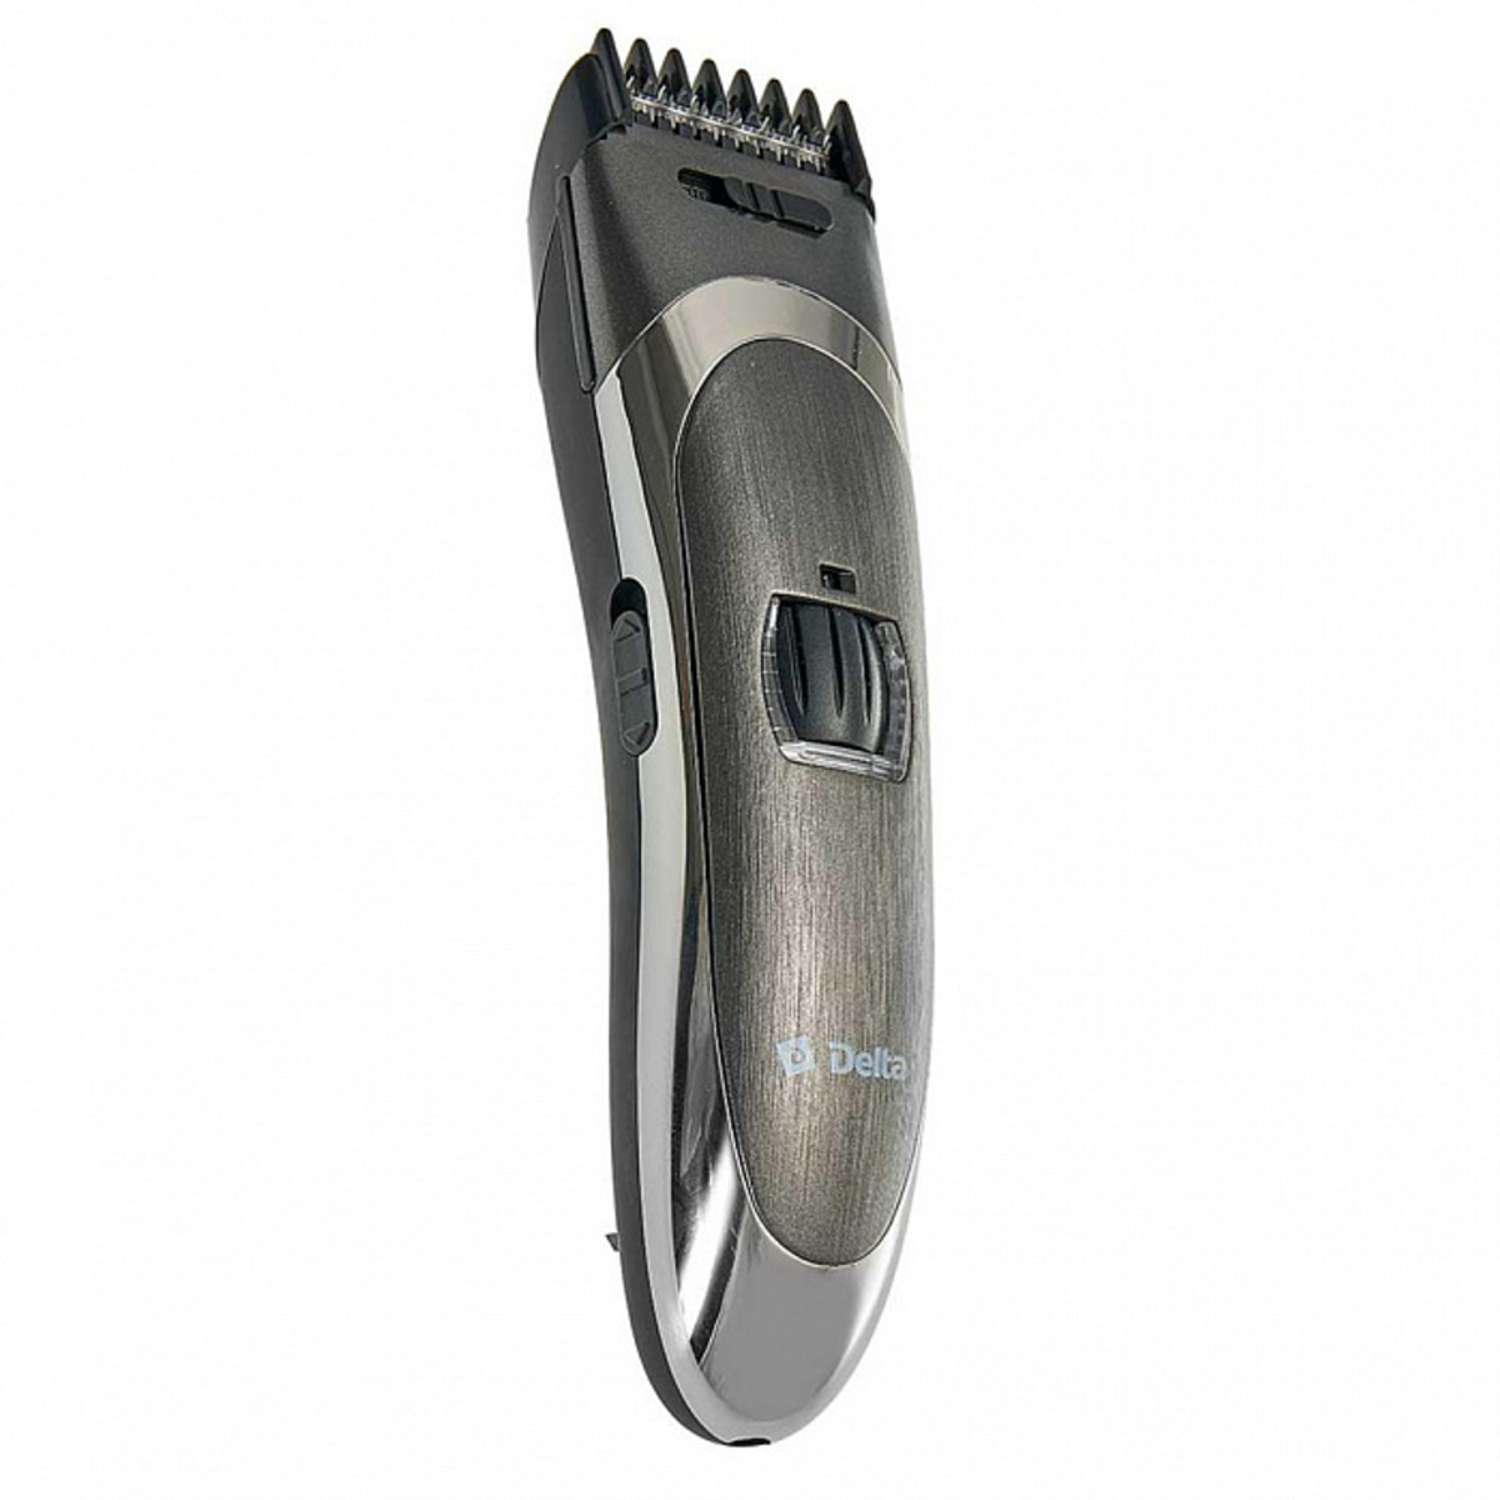 Машинка для стрижки волос Delta DL-4060A черный 3 Вт аккумулятор филировка съемный гребень - фото 1